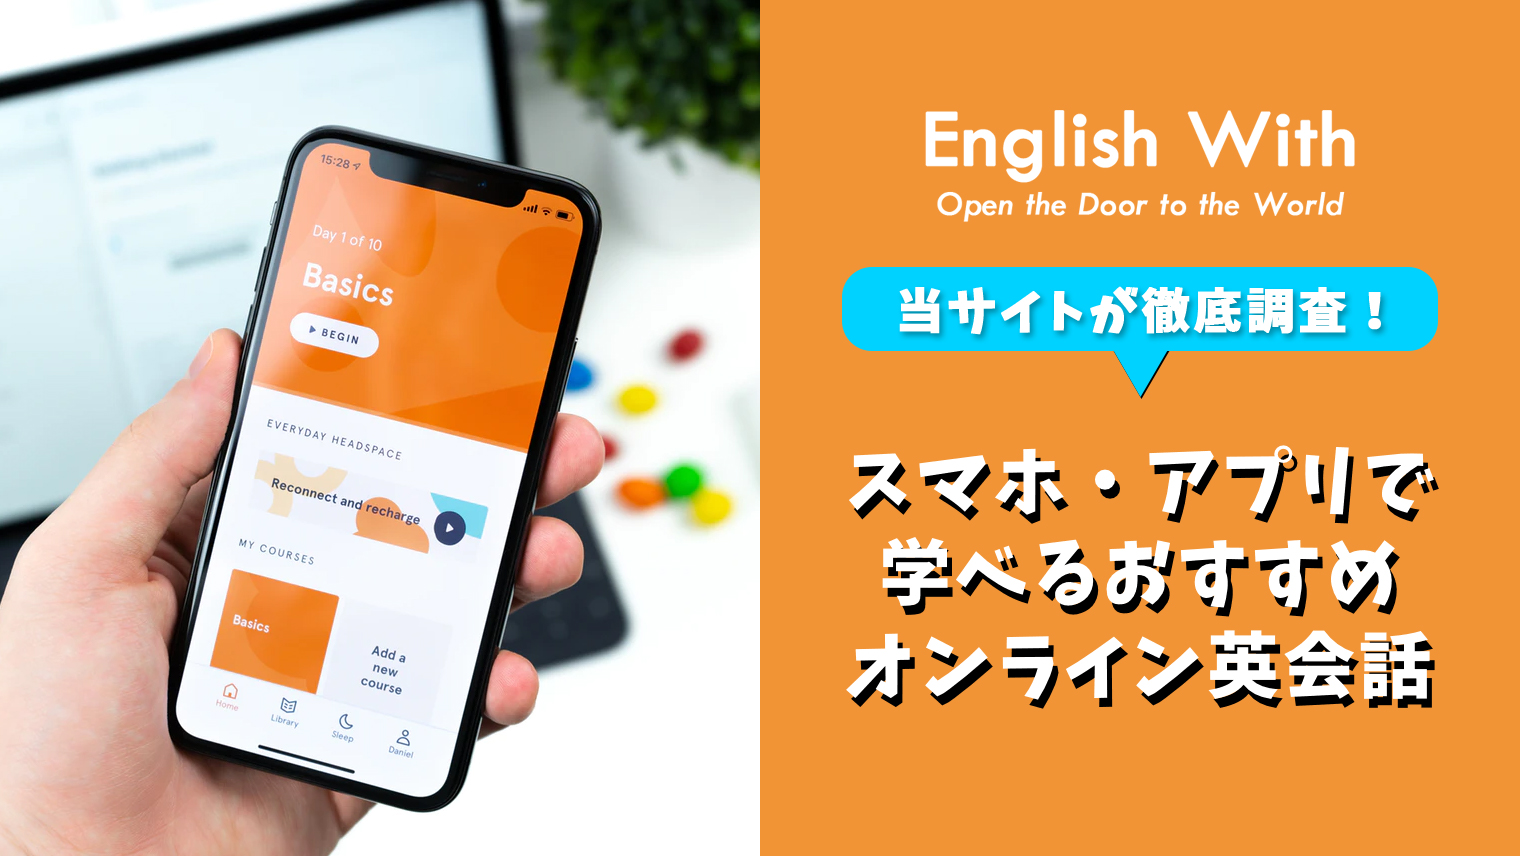 スマホで簡単英会話 アプリで学べるオンライン英会話 8選 おすすめ英会話 英語学習の比較 ランキング English With